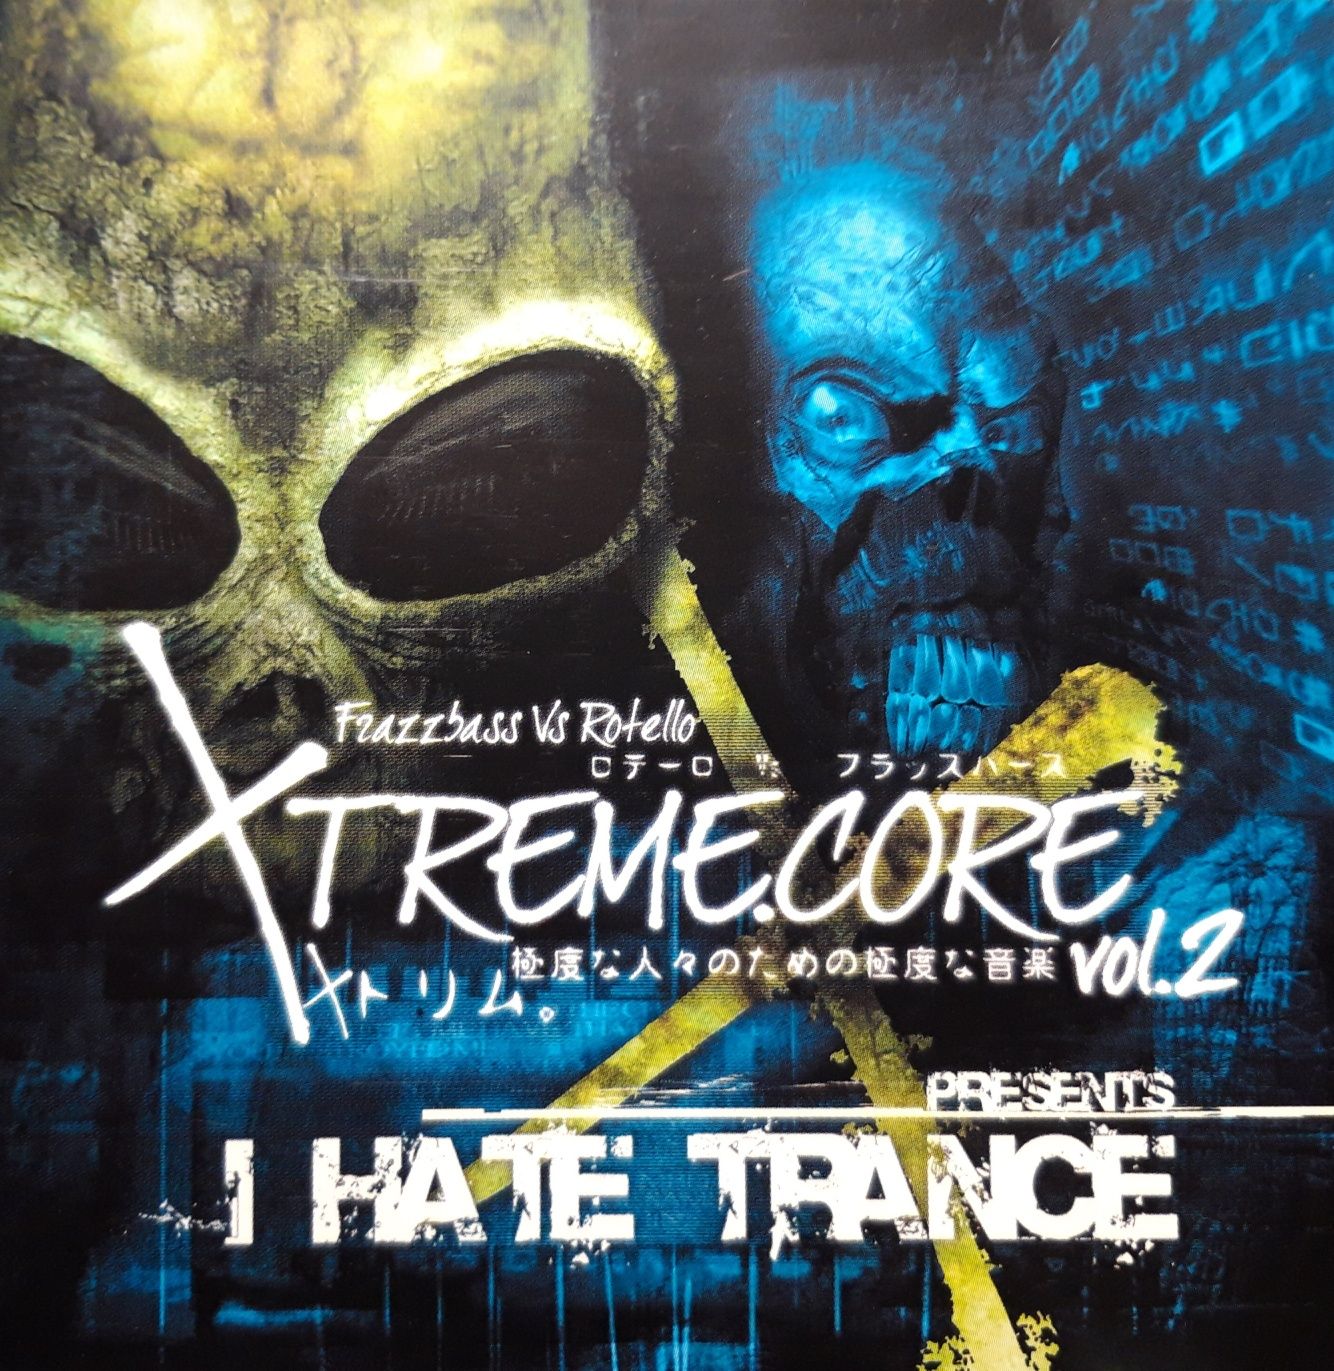 Frazzbass Vs Rotello – Xtreme.Core Vol. 2 (CD, 2005)